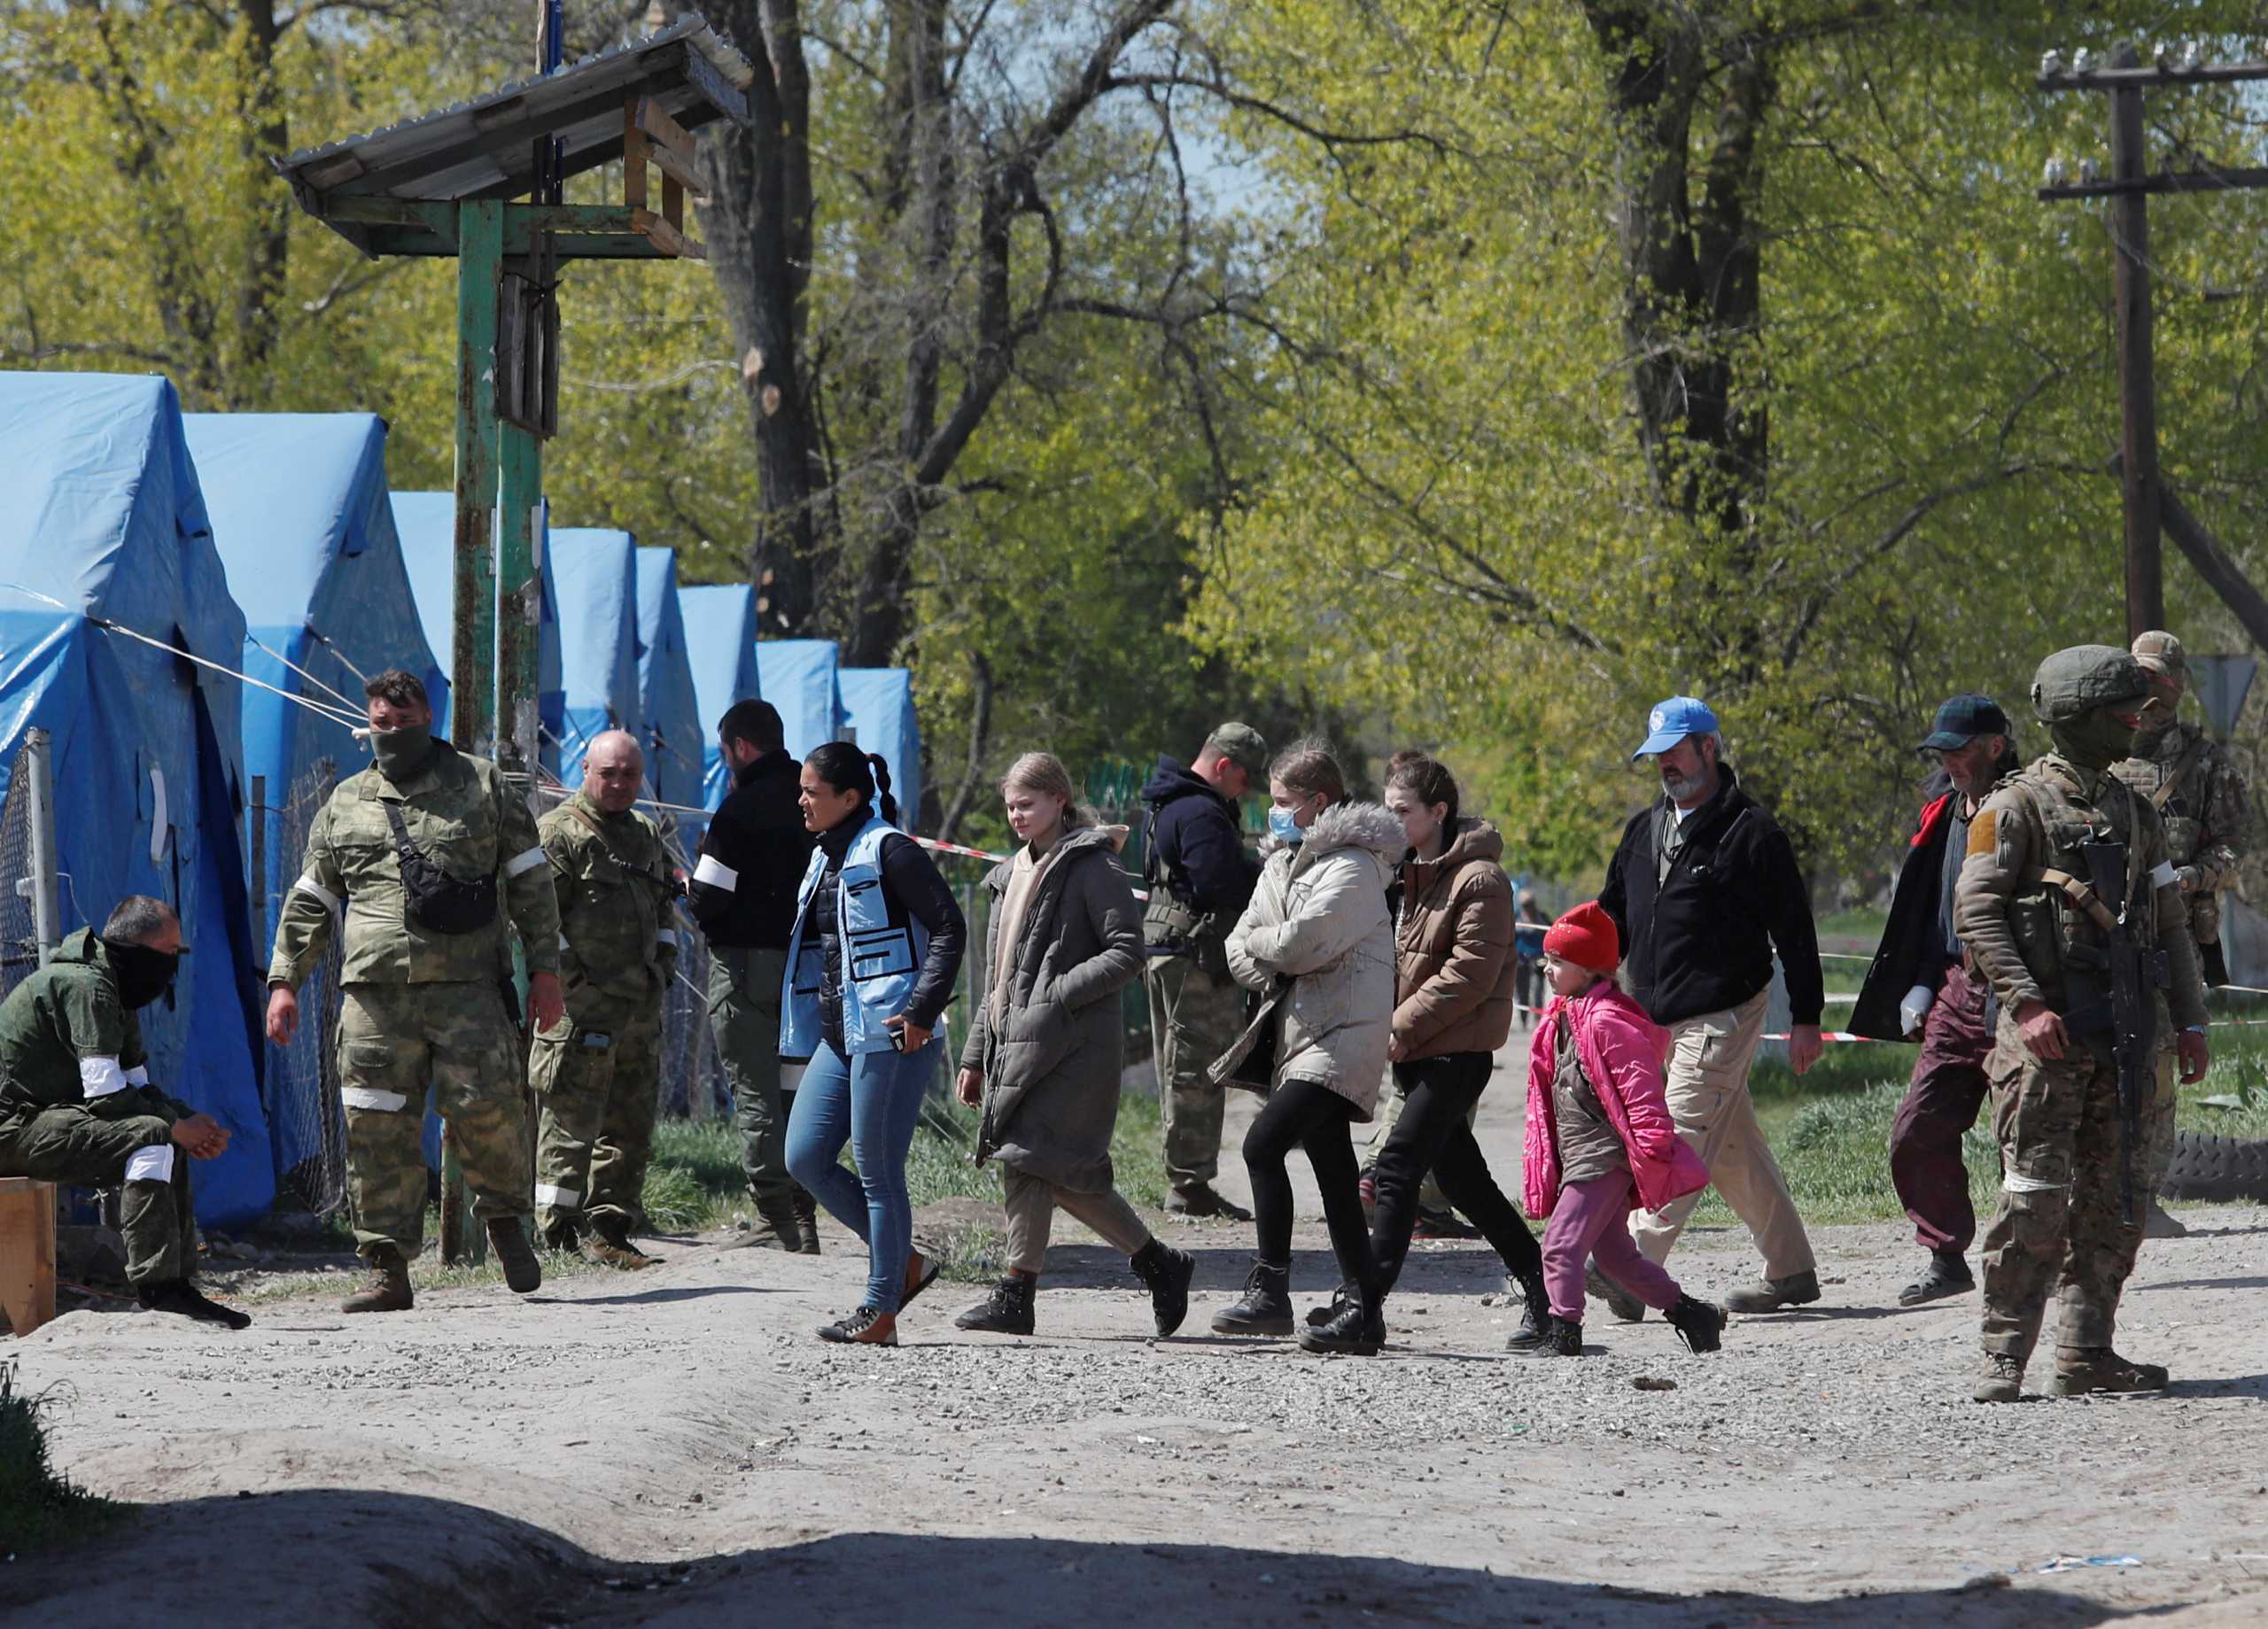 Πόλεμος στην Ουκρανία: Άμαχοι απομακρύνονται από το εργοστάσιο Αζοφστάλ λέει ο ΟΗΕ